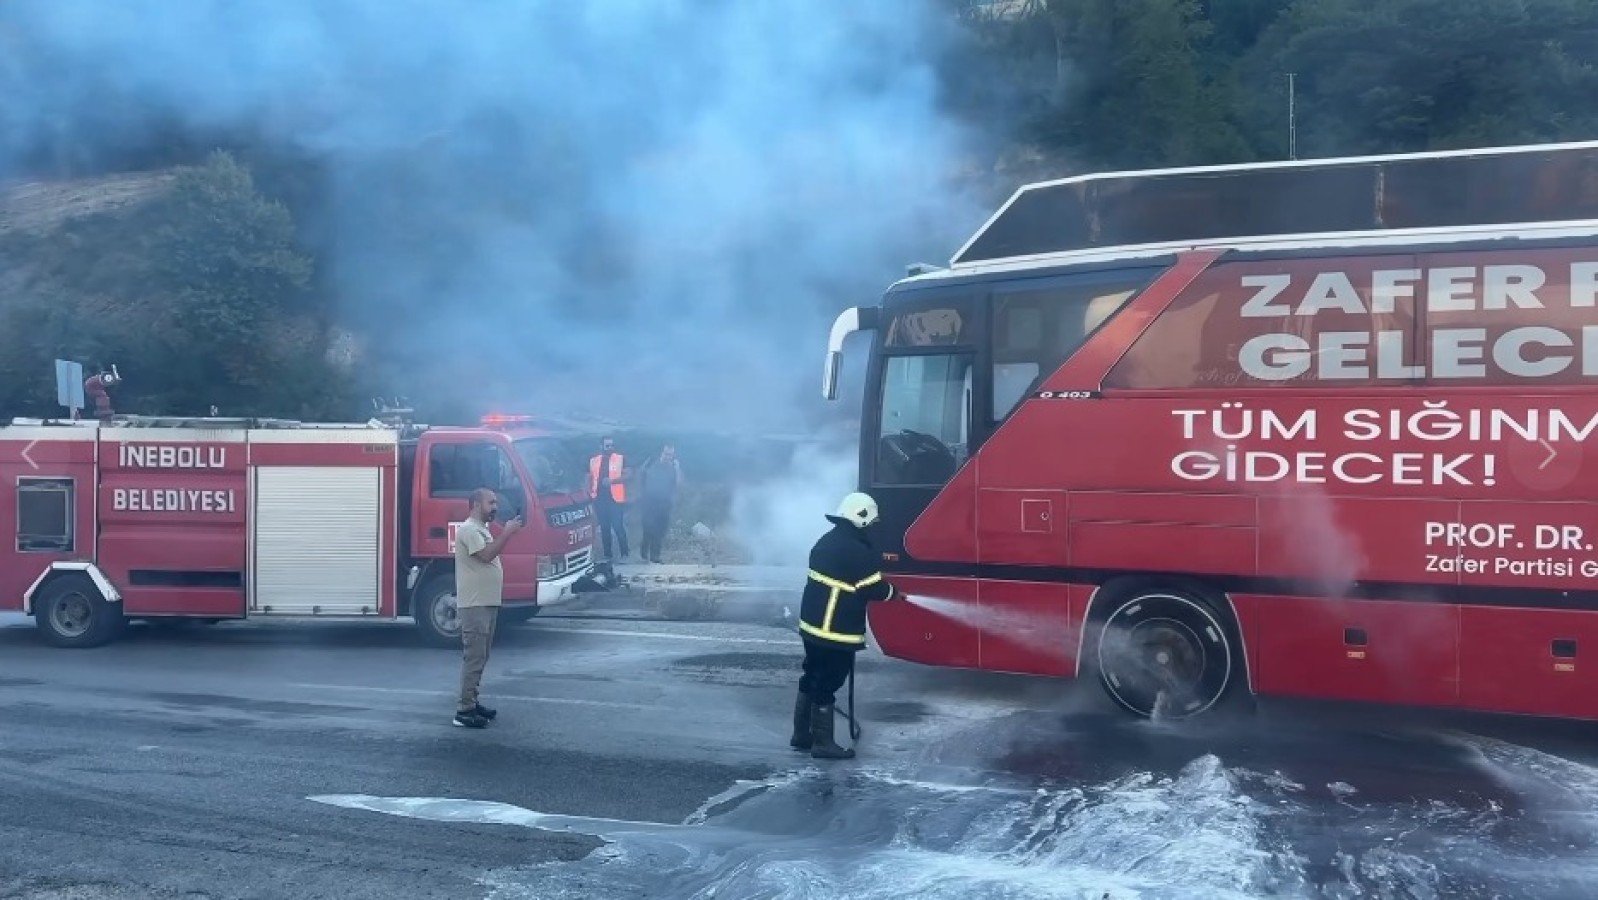 İnebolu'da Özdağ'ın otobüsü yandı